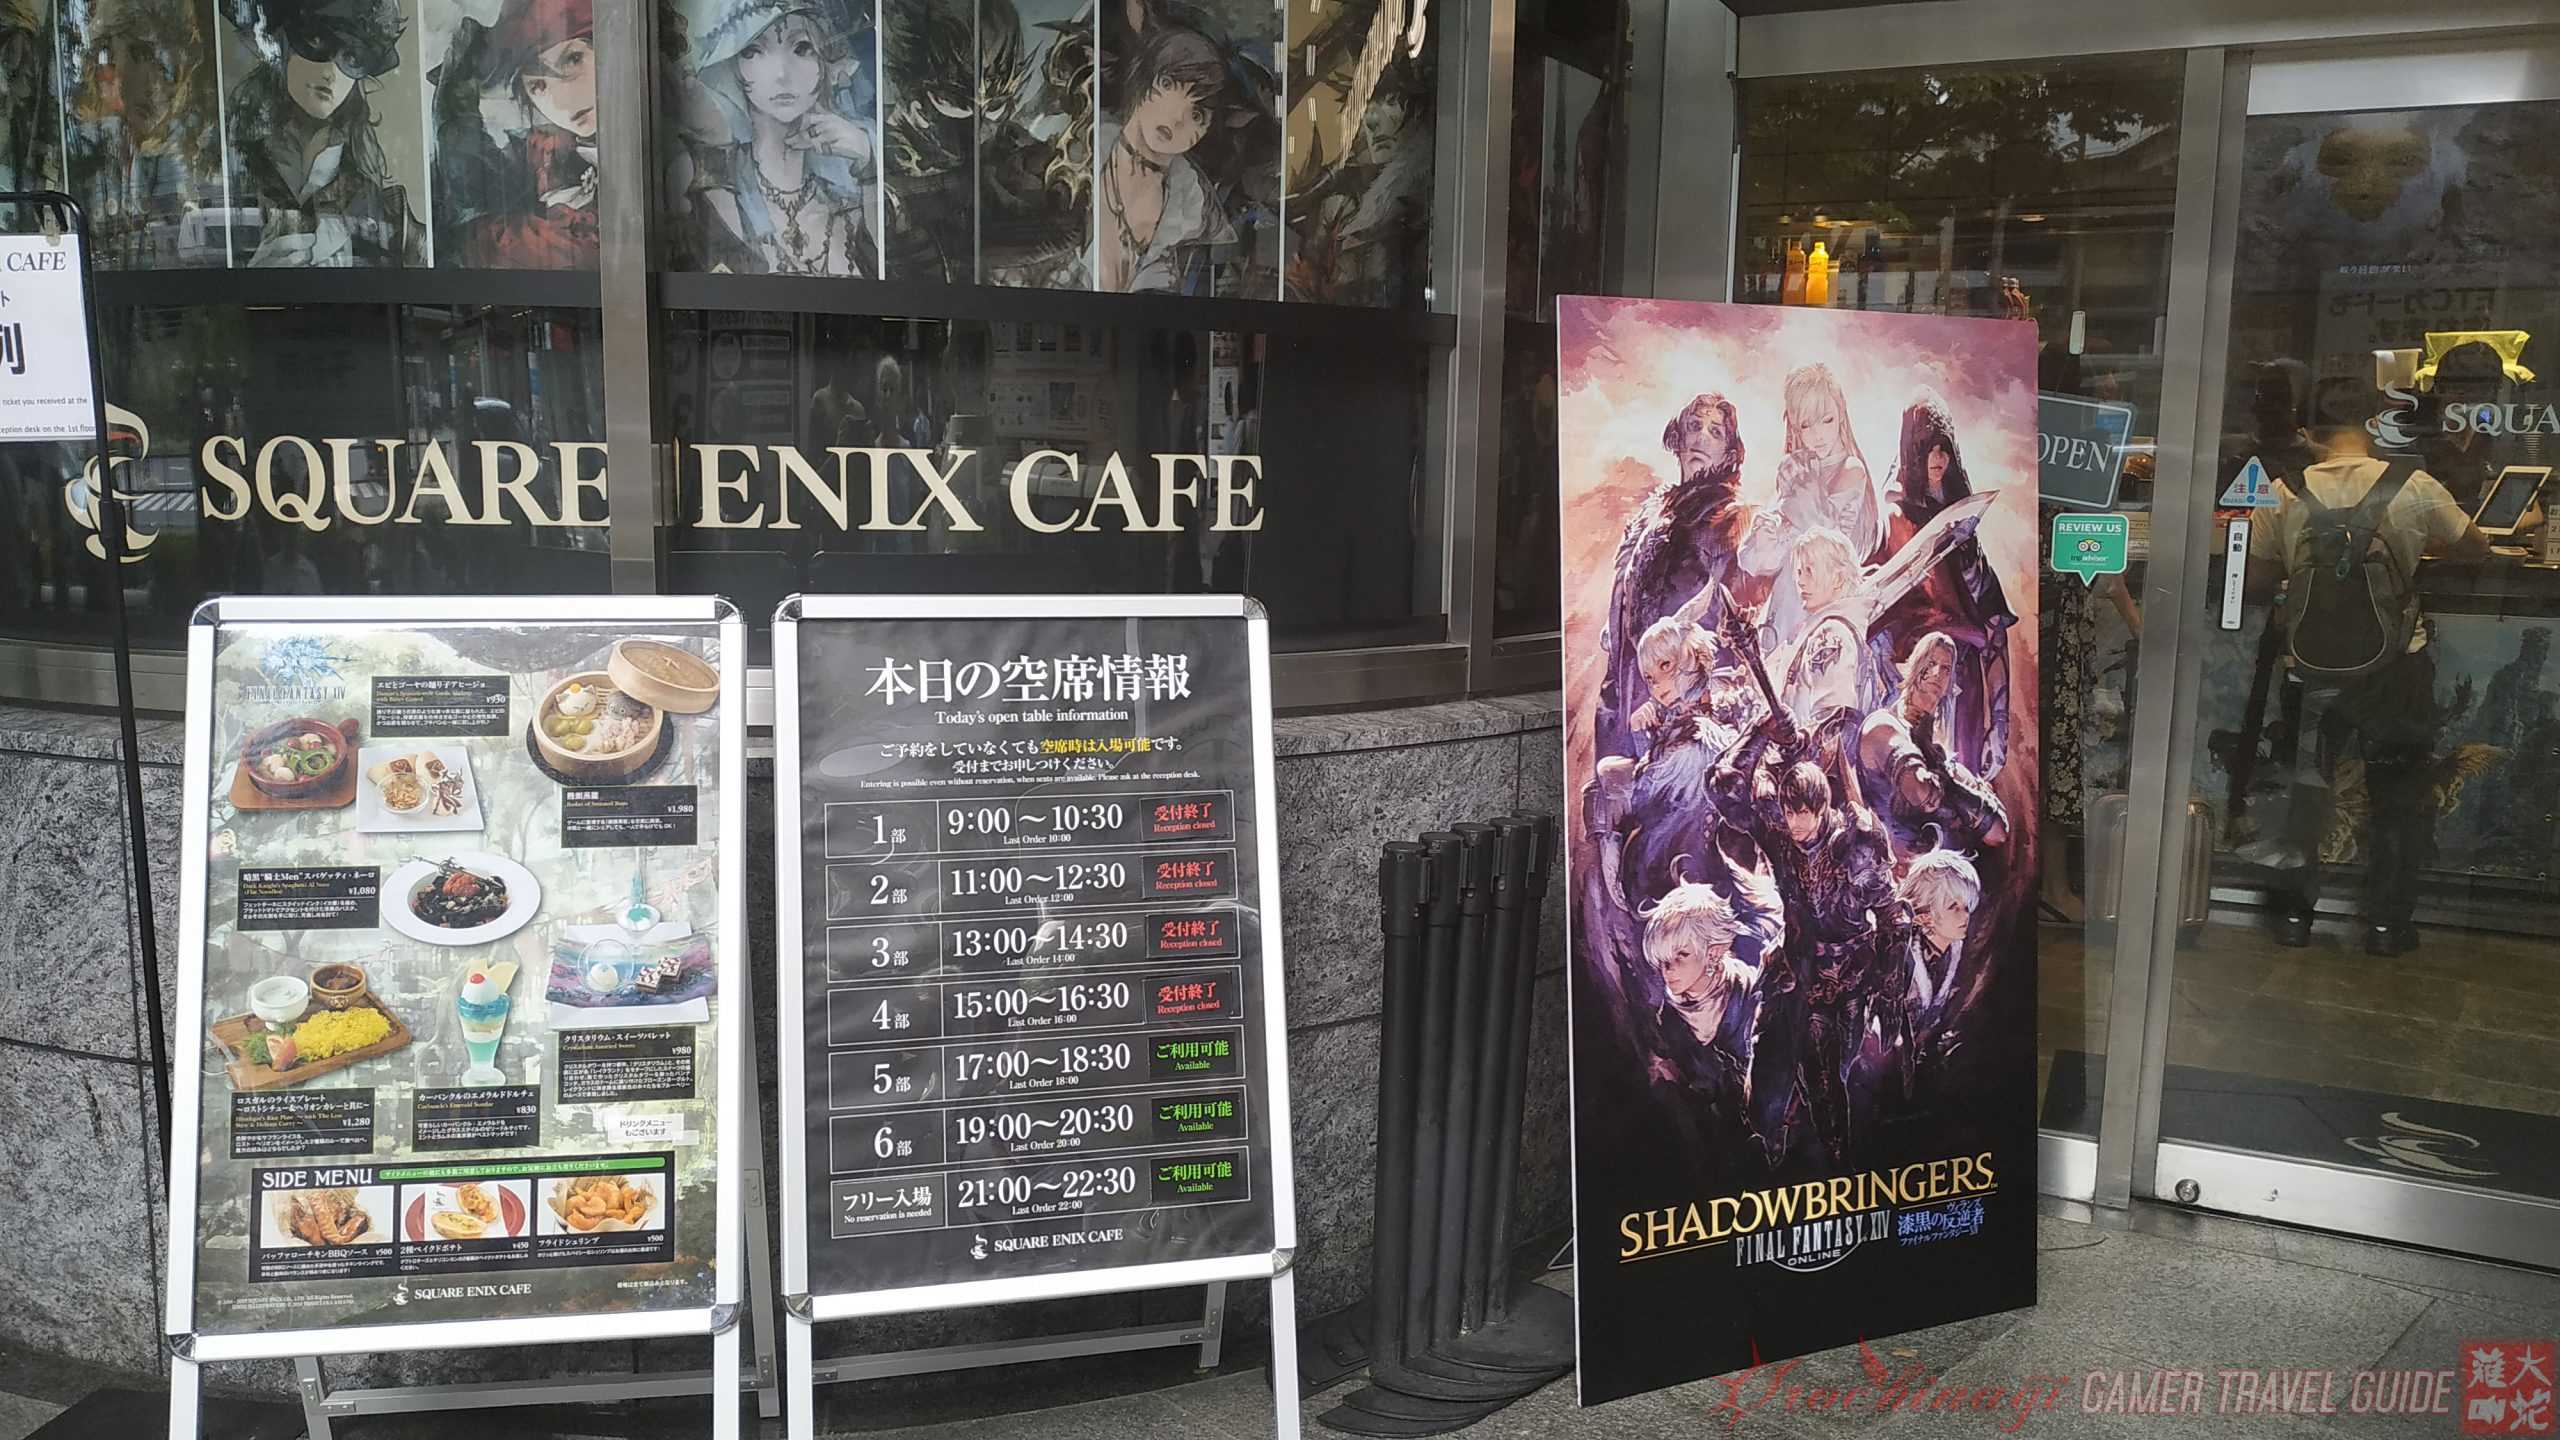 Square Enix Cafe –